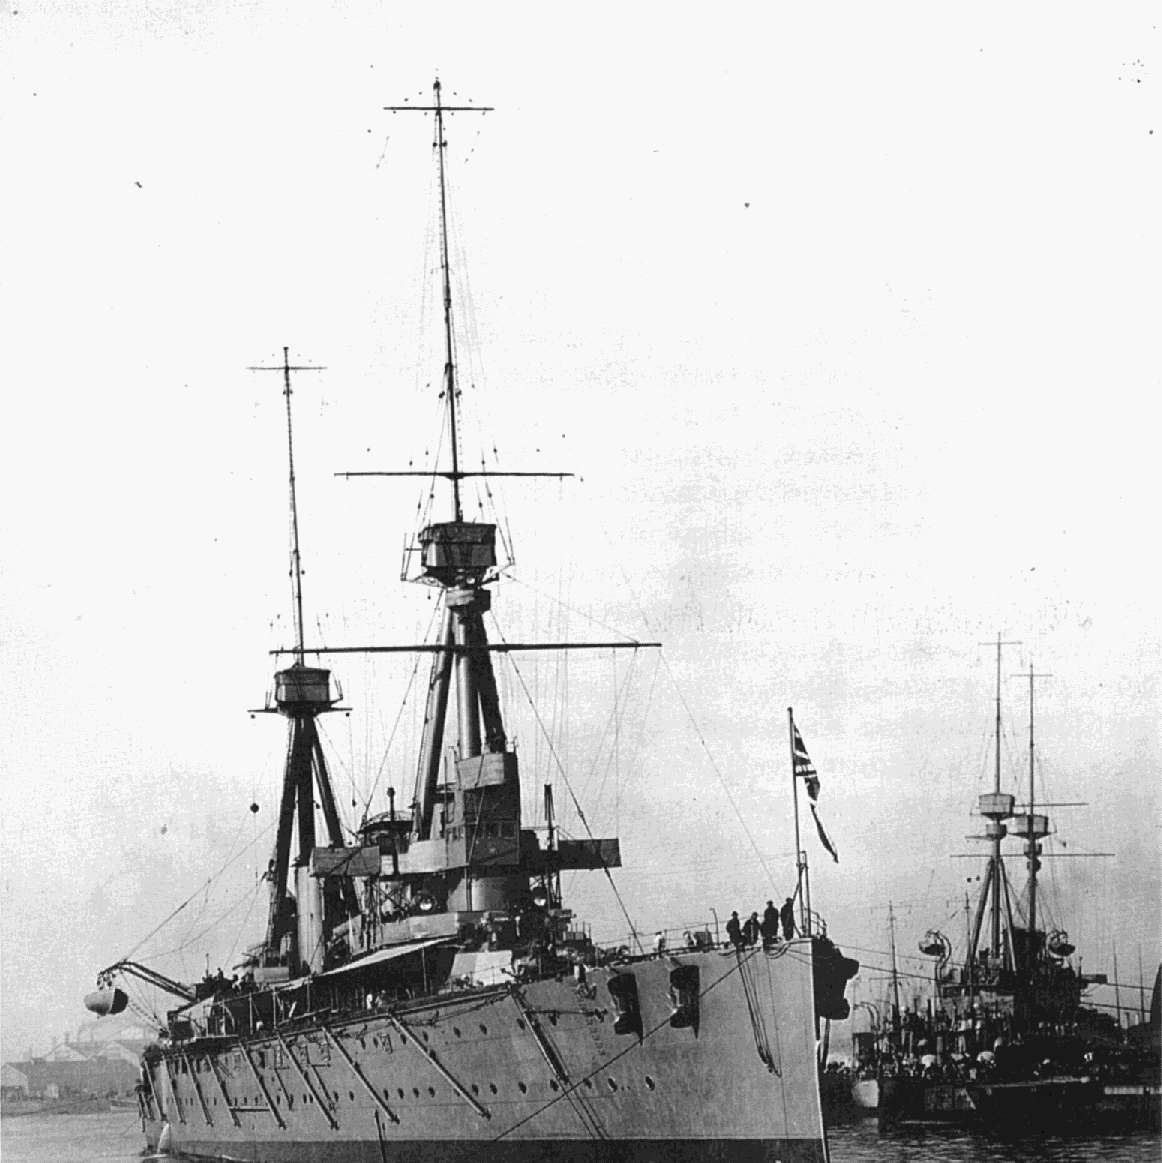 世界上第一艘战列巡洋舰"无敌"号,摄于1908年完工后不久(mod)